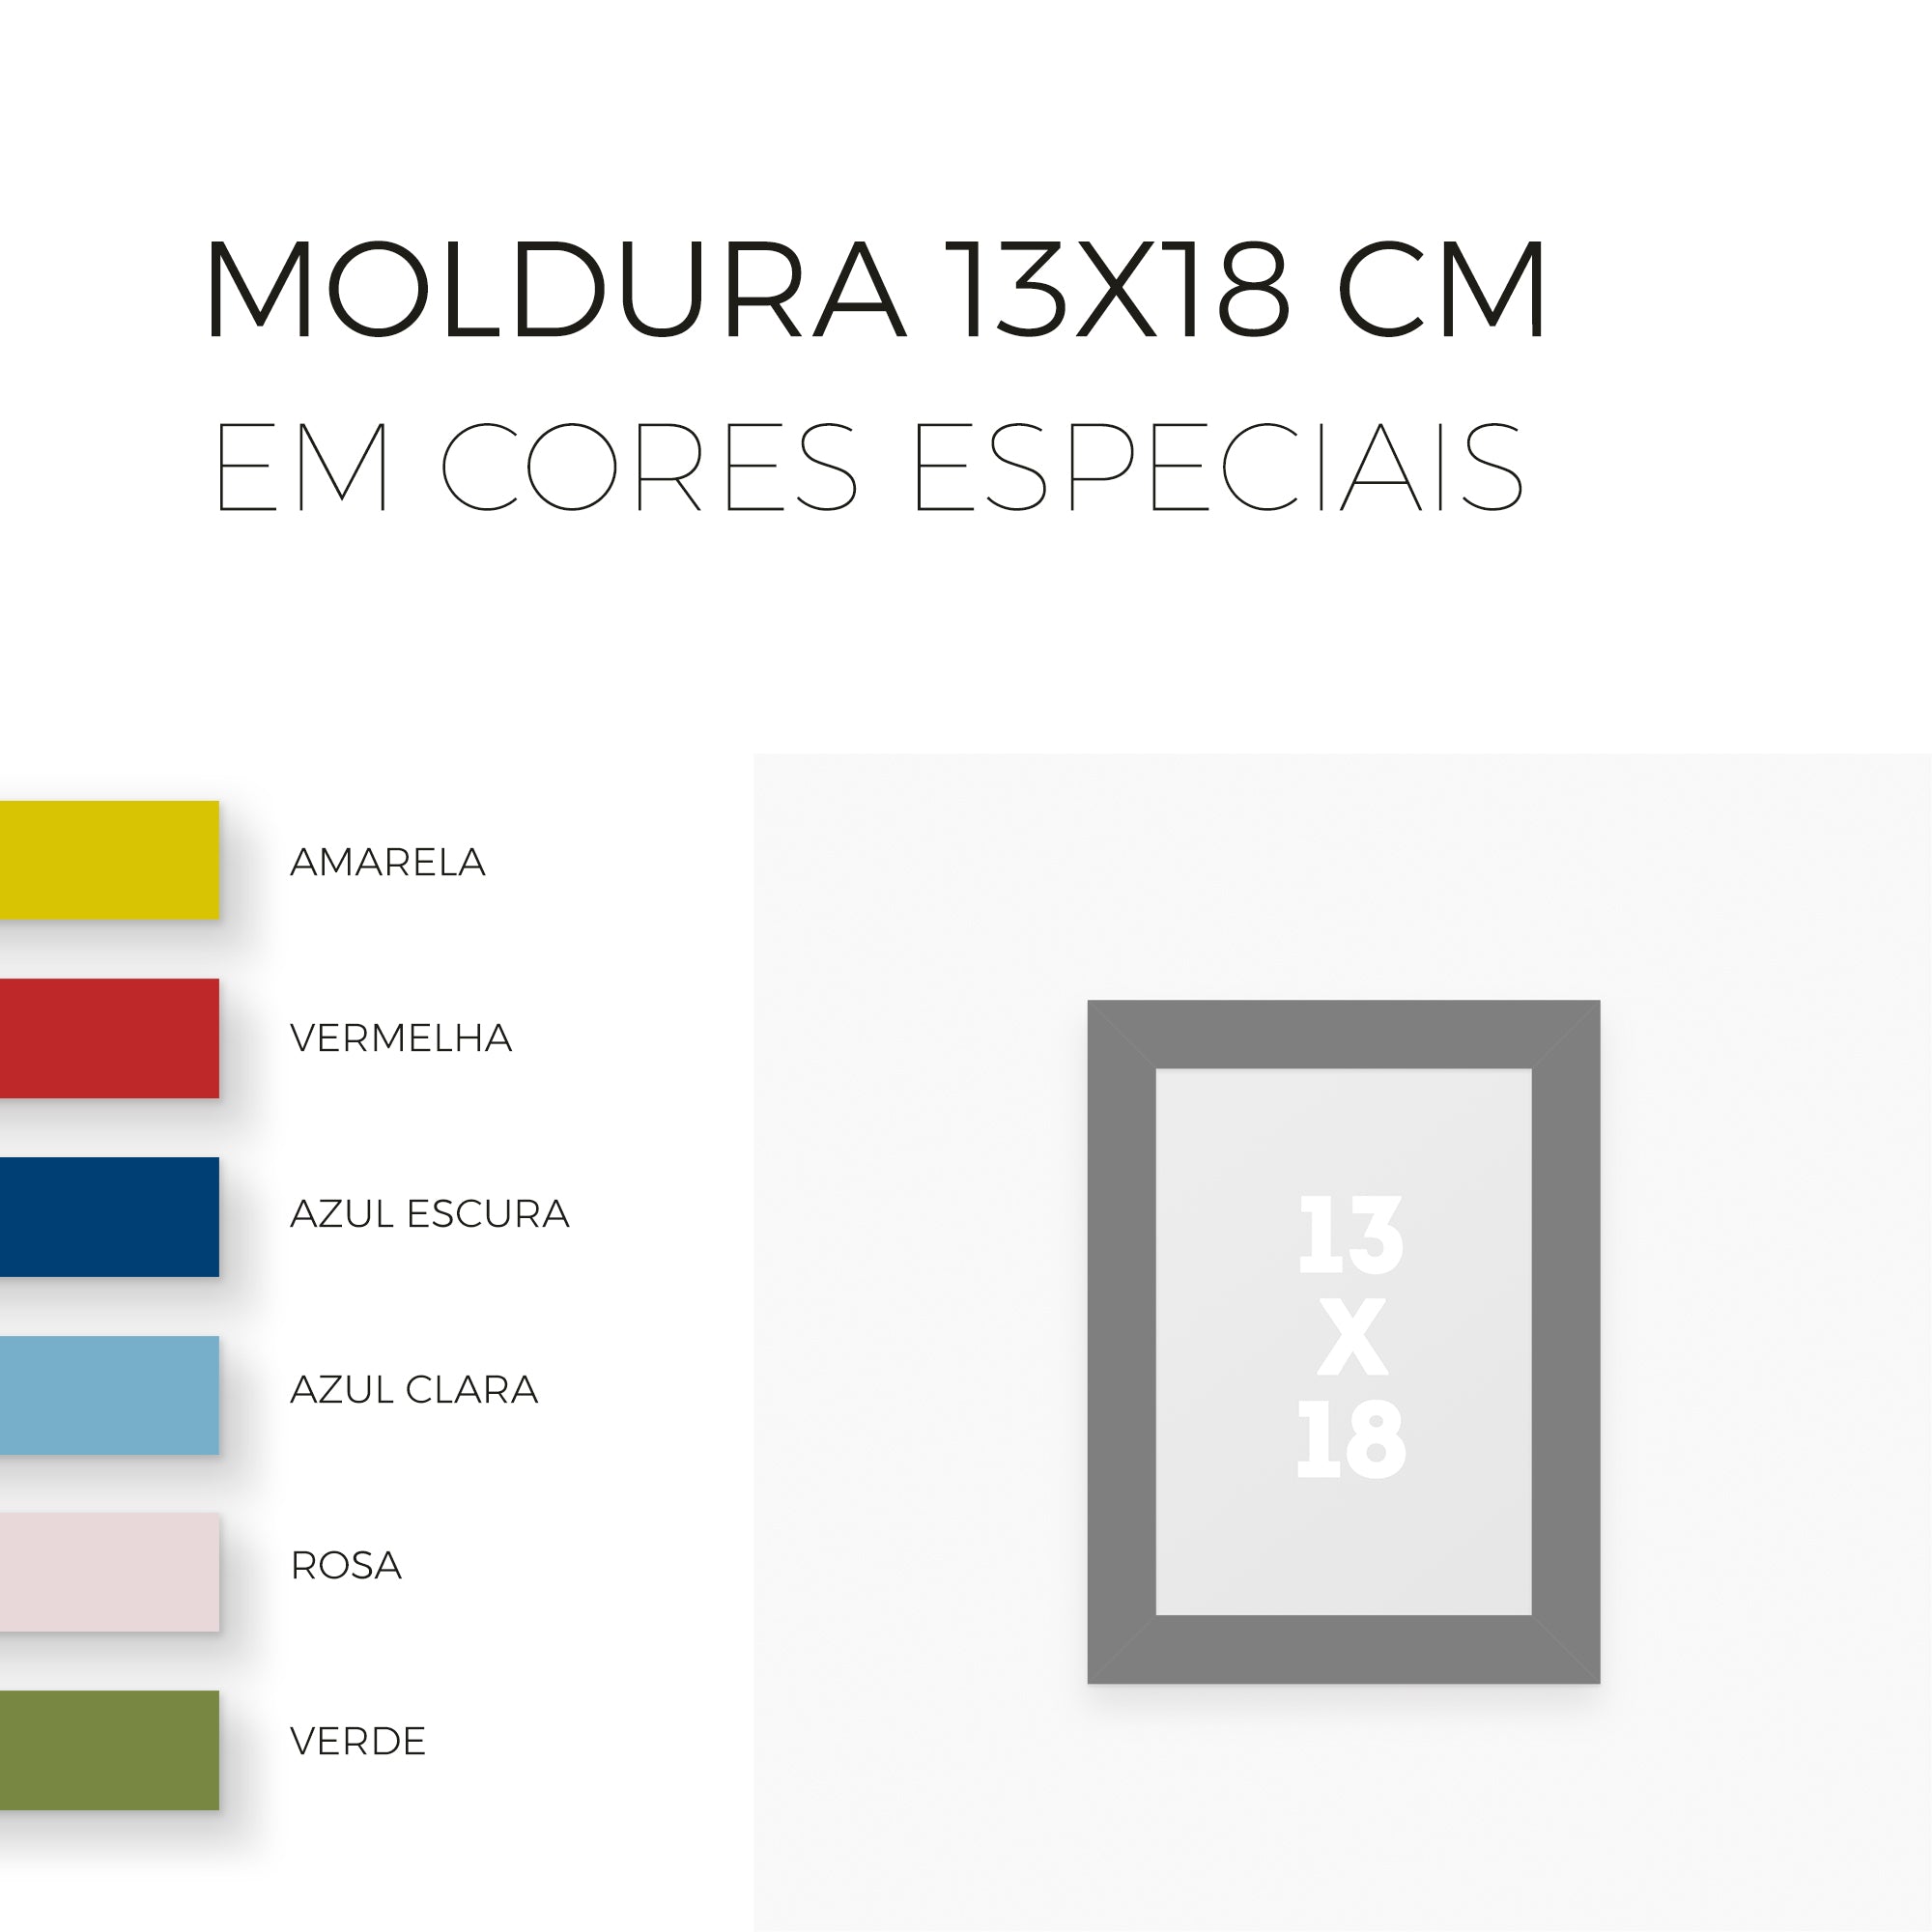 Moldura 13x18